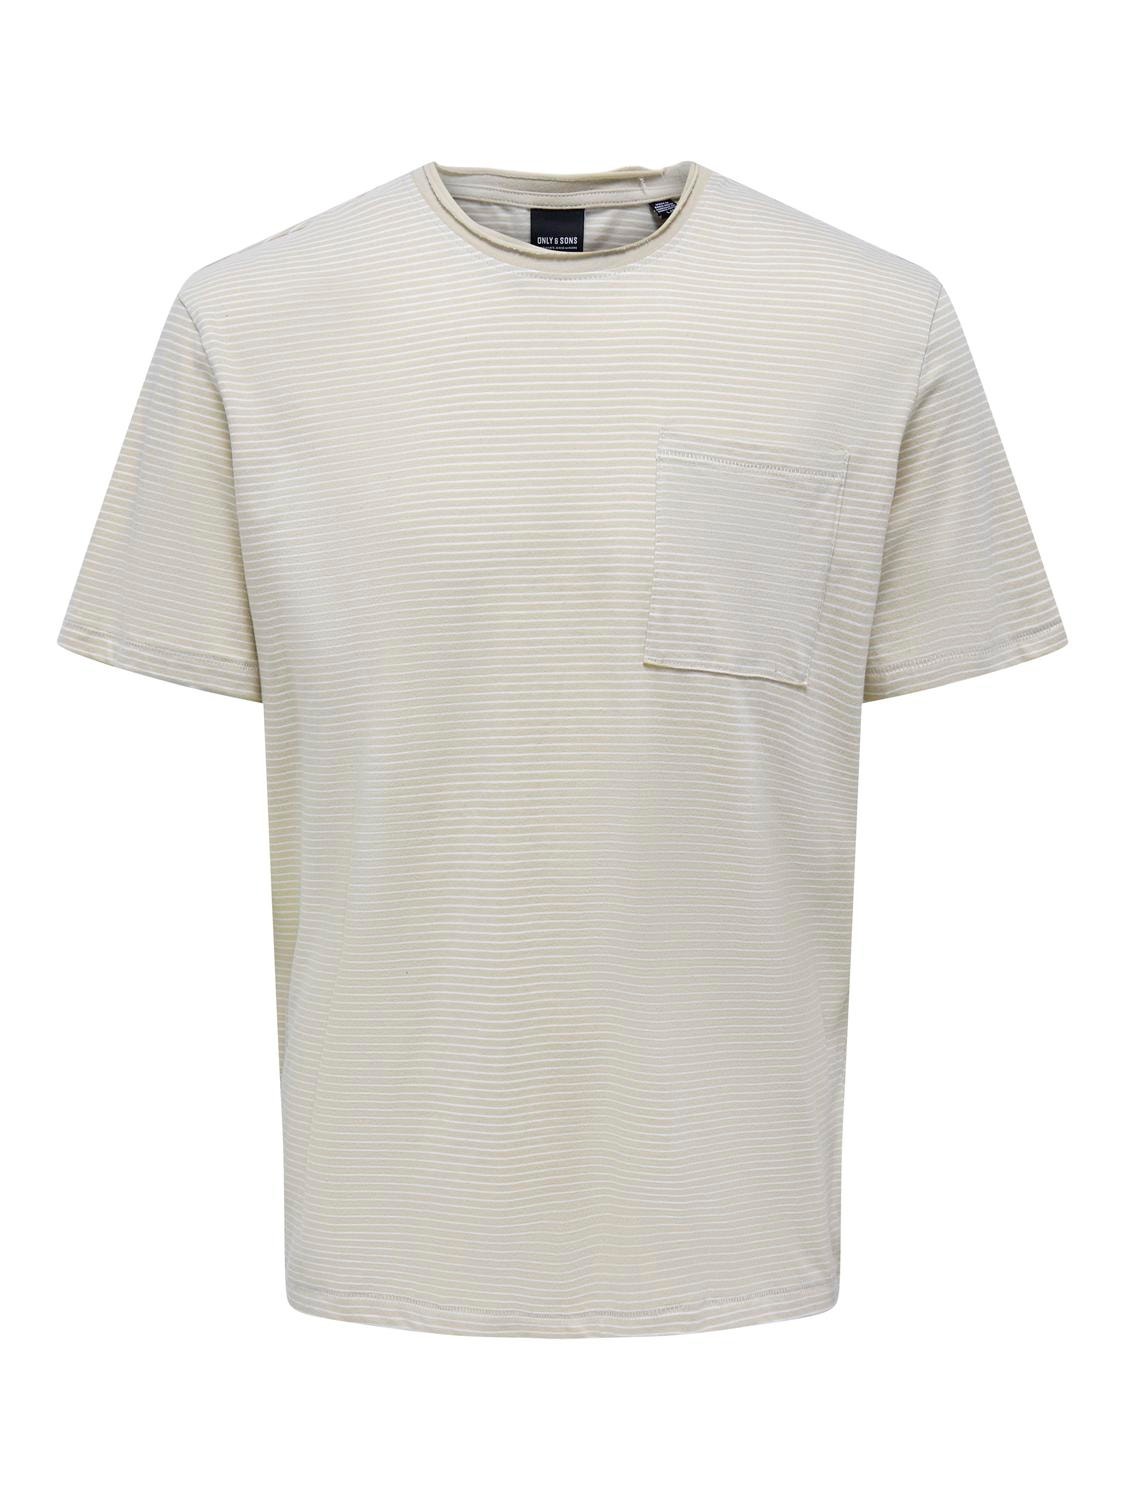 ONLY & SONS Camisetas Corte regular Cuello redondo -Pelican - 22025680